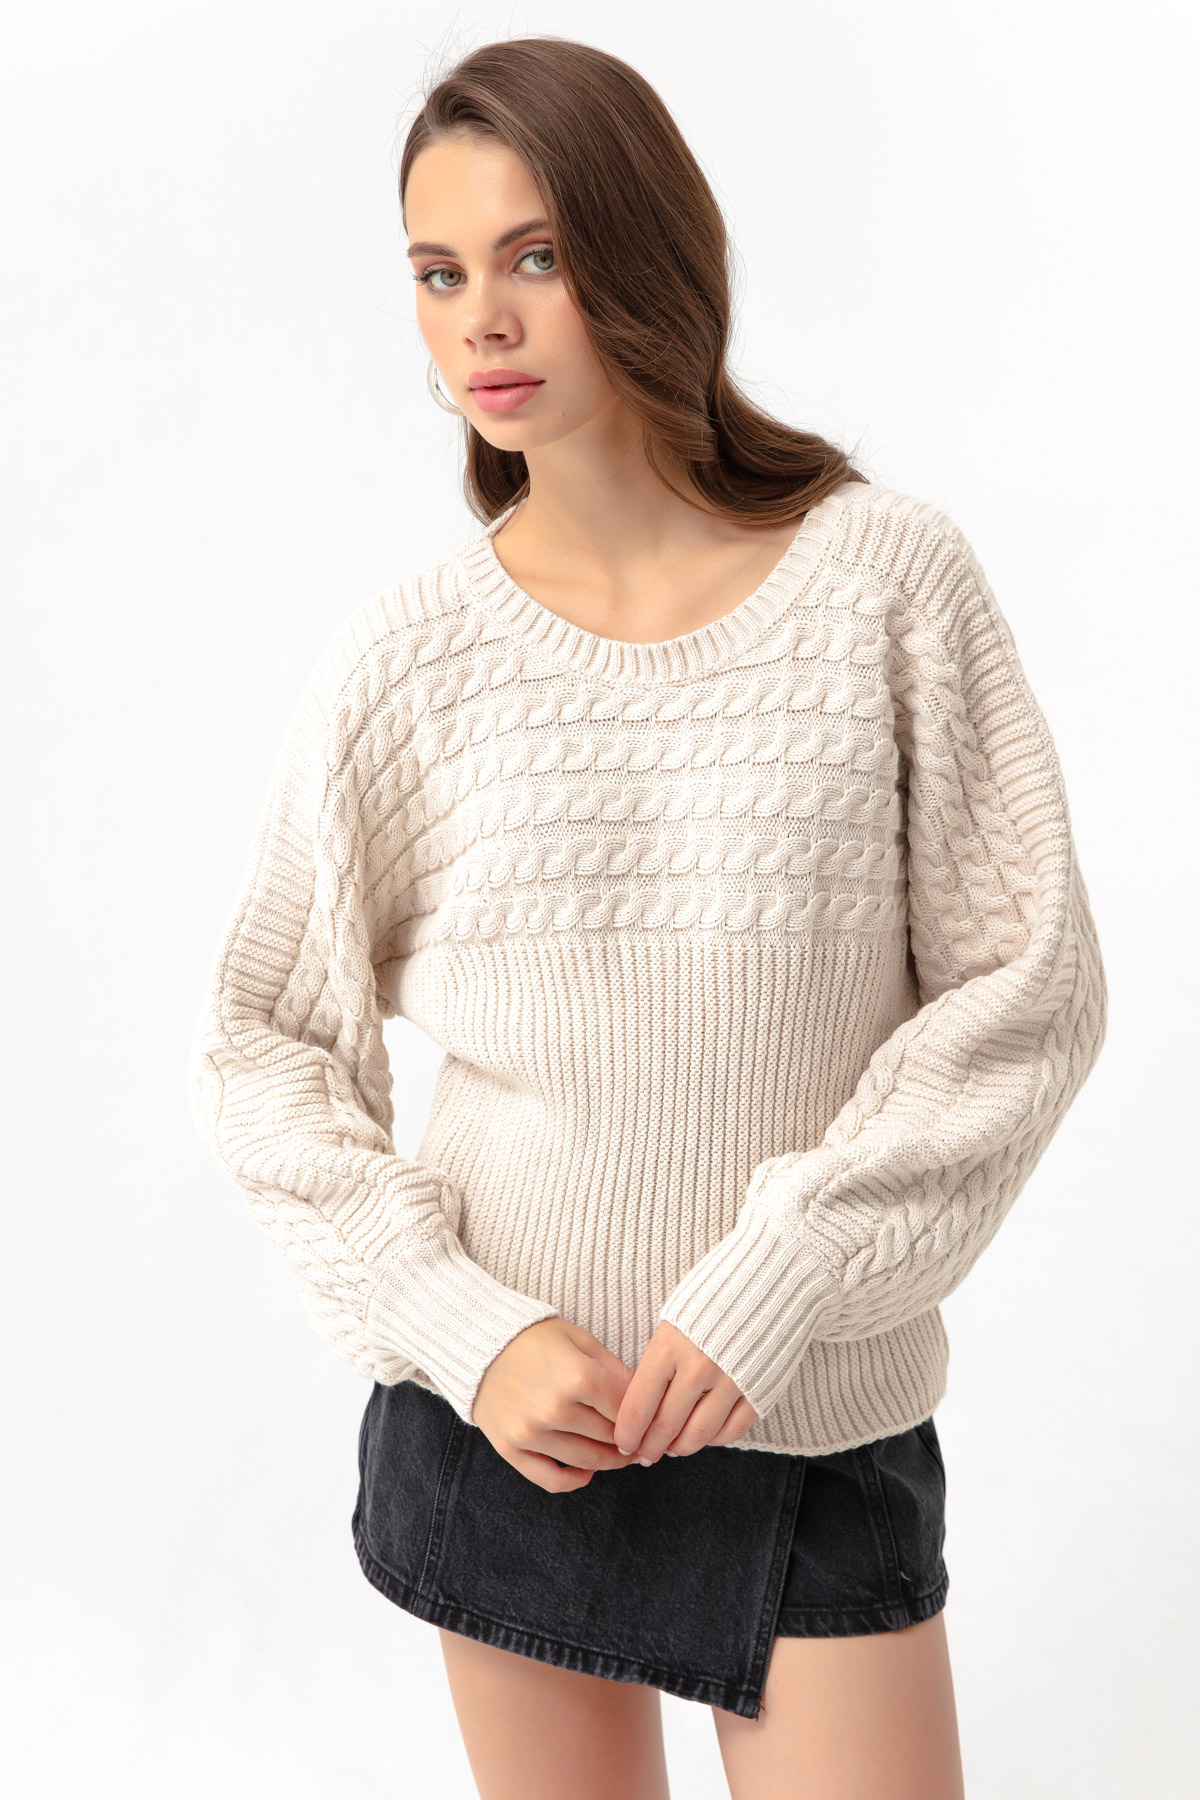 Women's Beige Boat Neck Knitwear Sweater